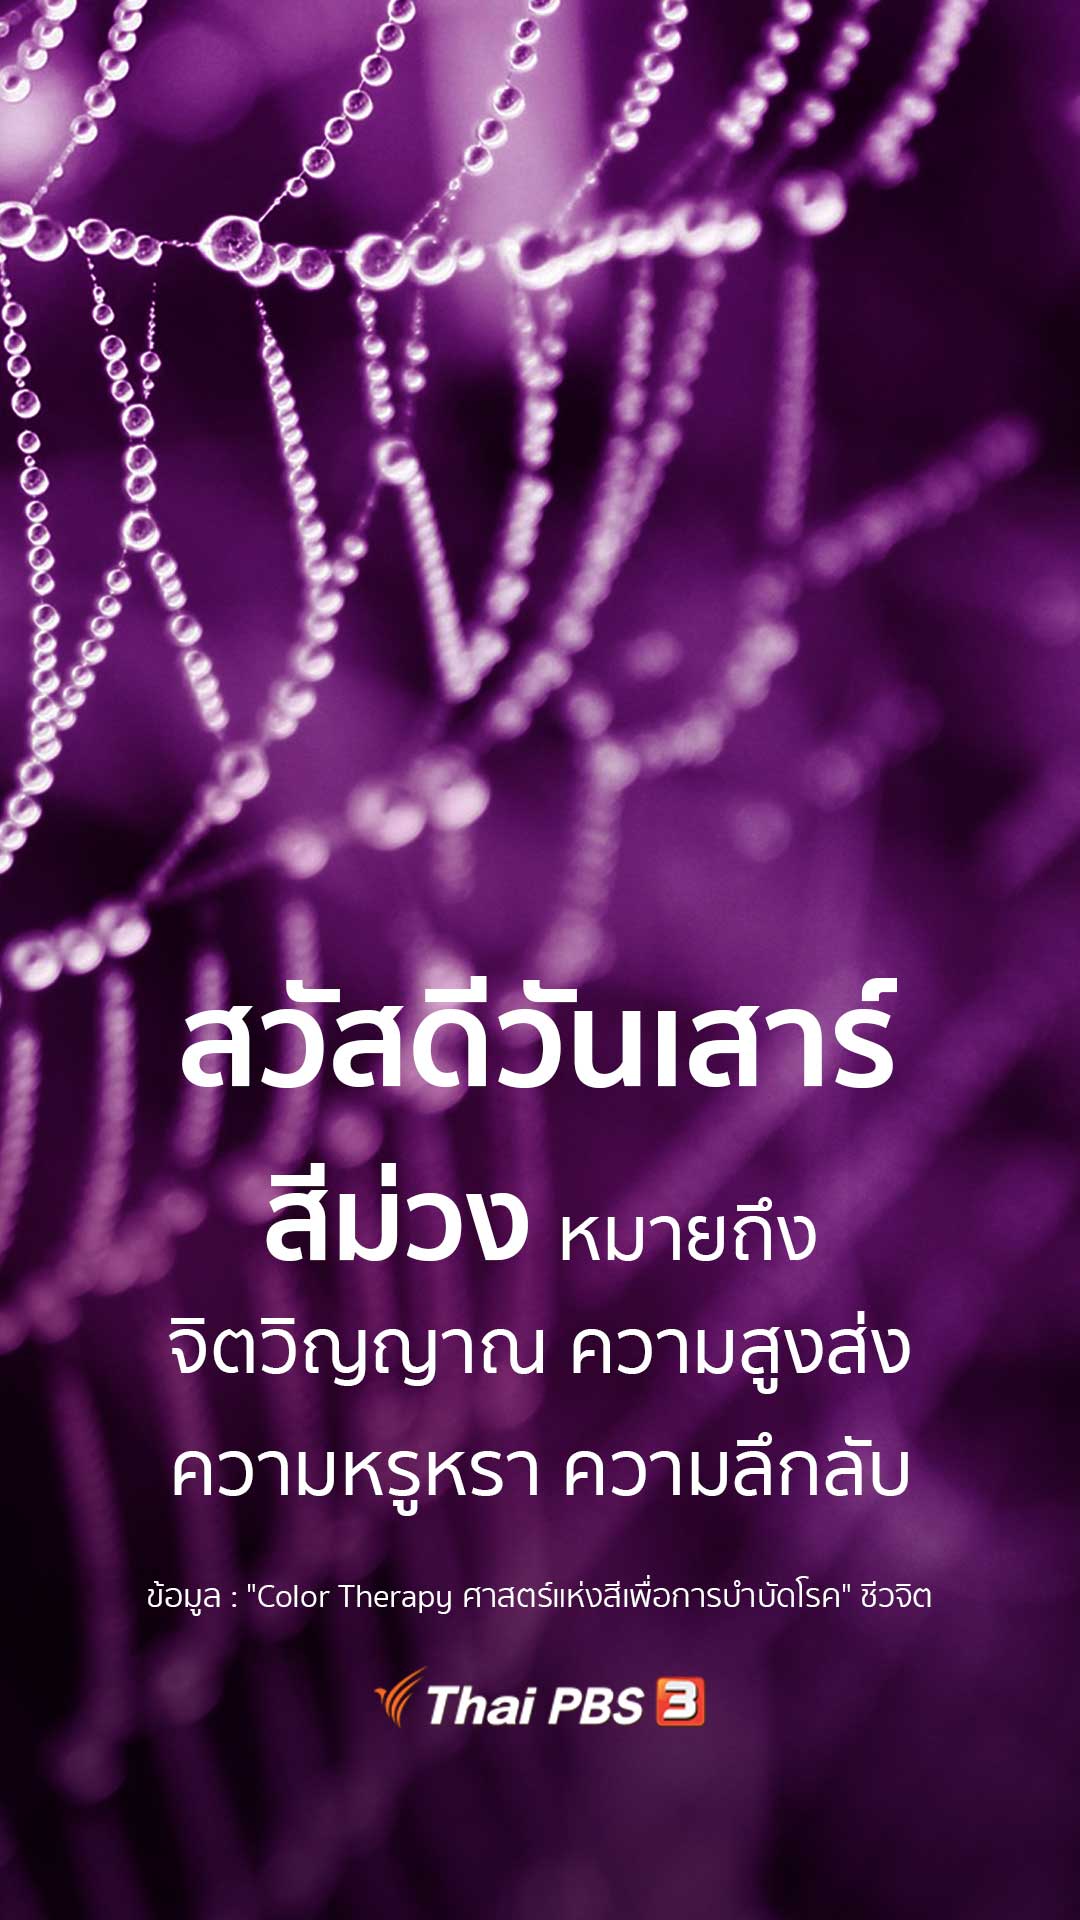 ความหมายของสีม่วง - Thai PBS สวัสดีทุกสีวัน